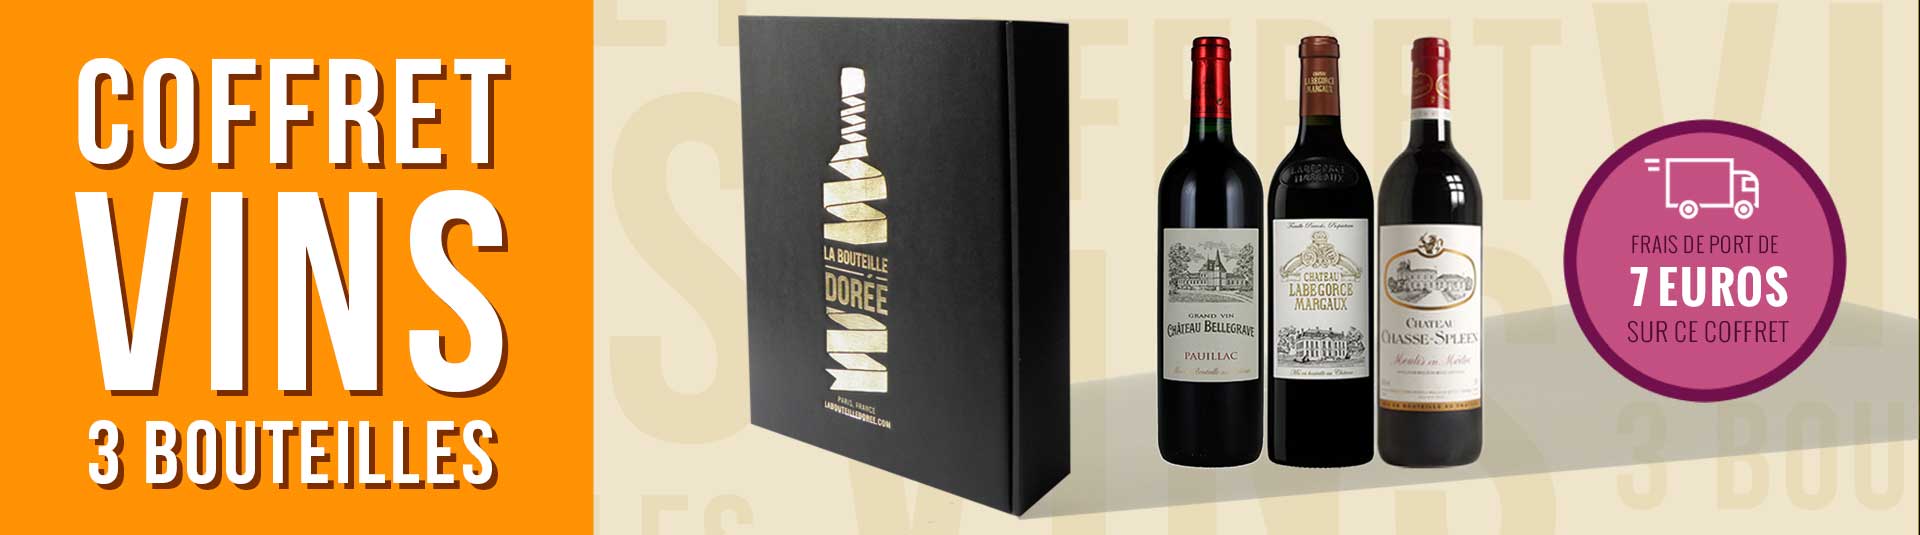 coffret vin Bordeaux Crus Bourgeois 3 bouteilles